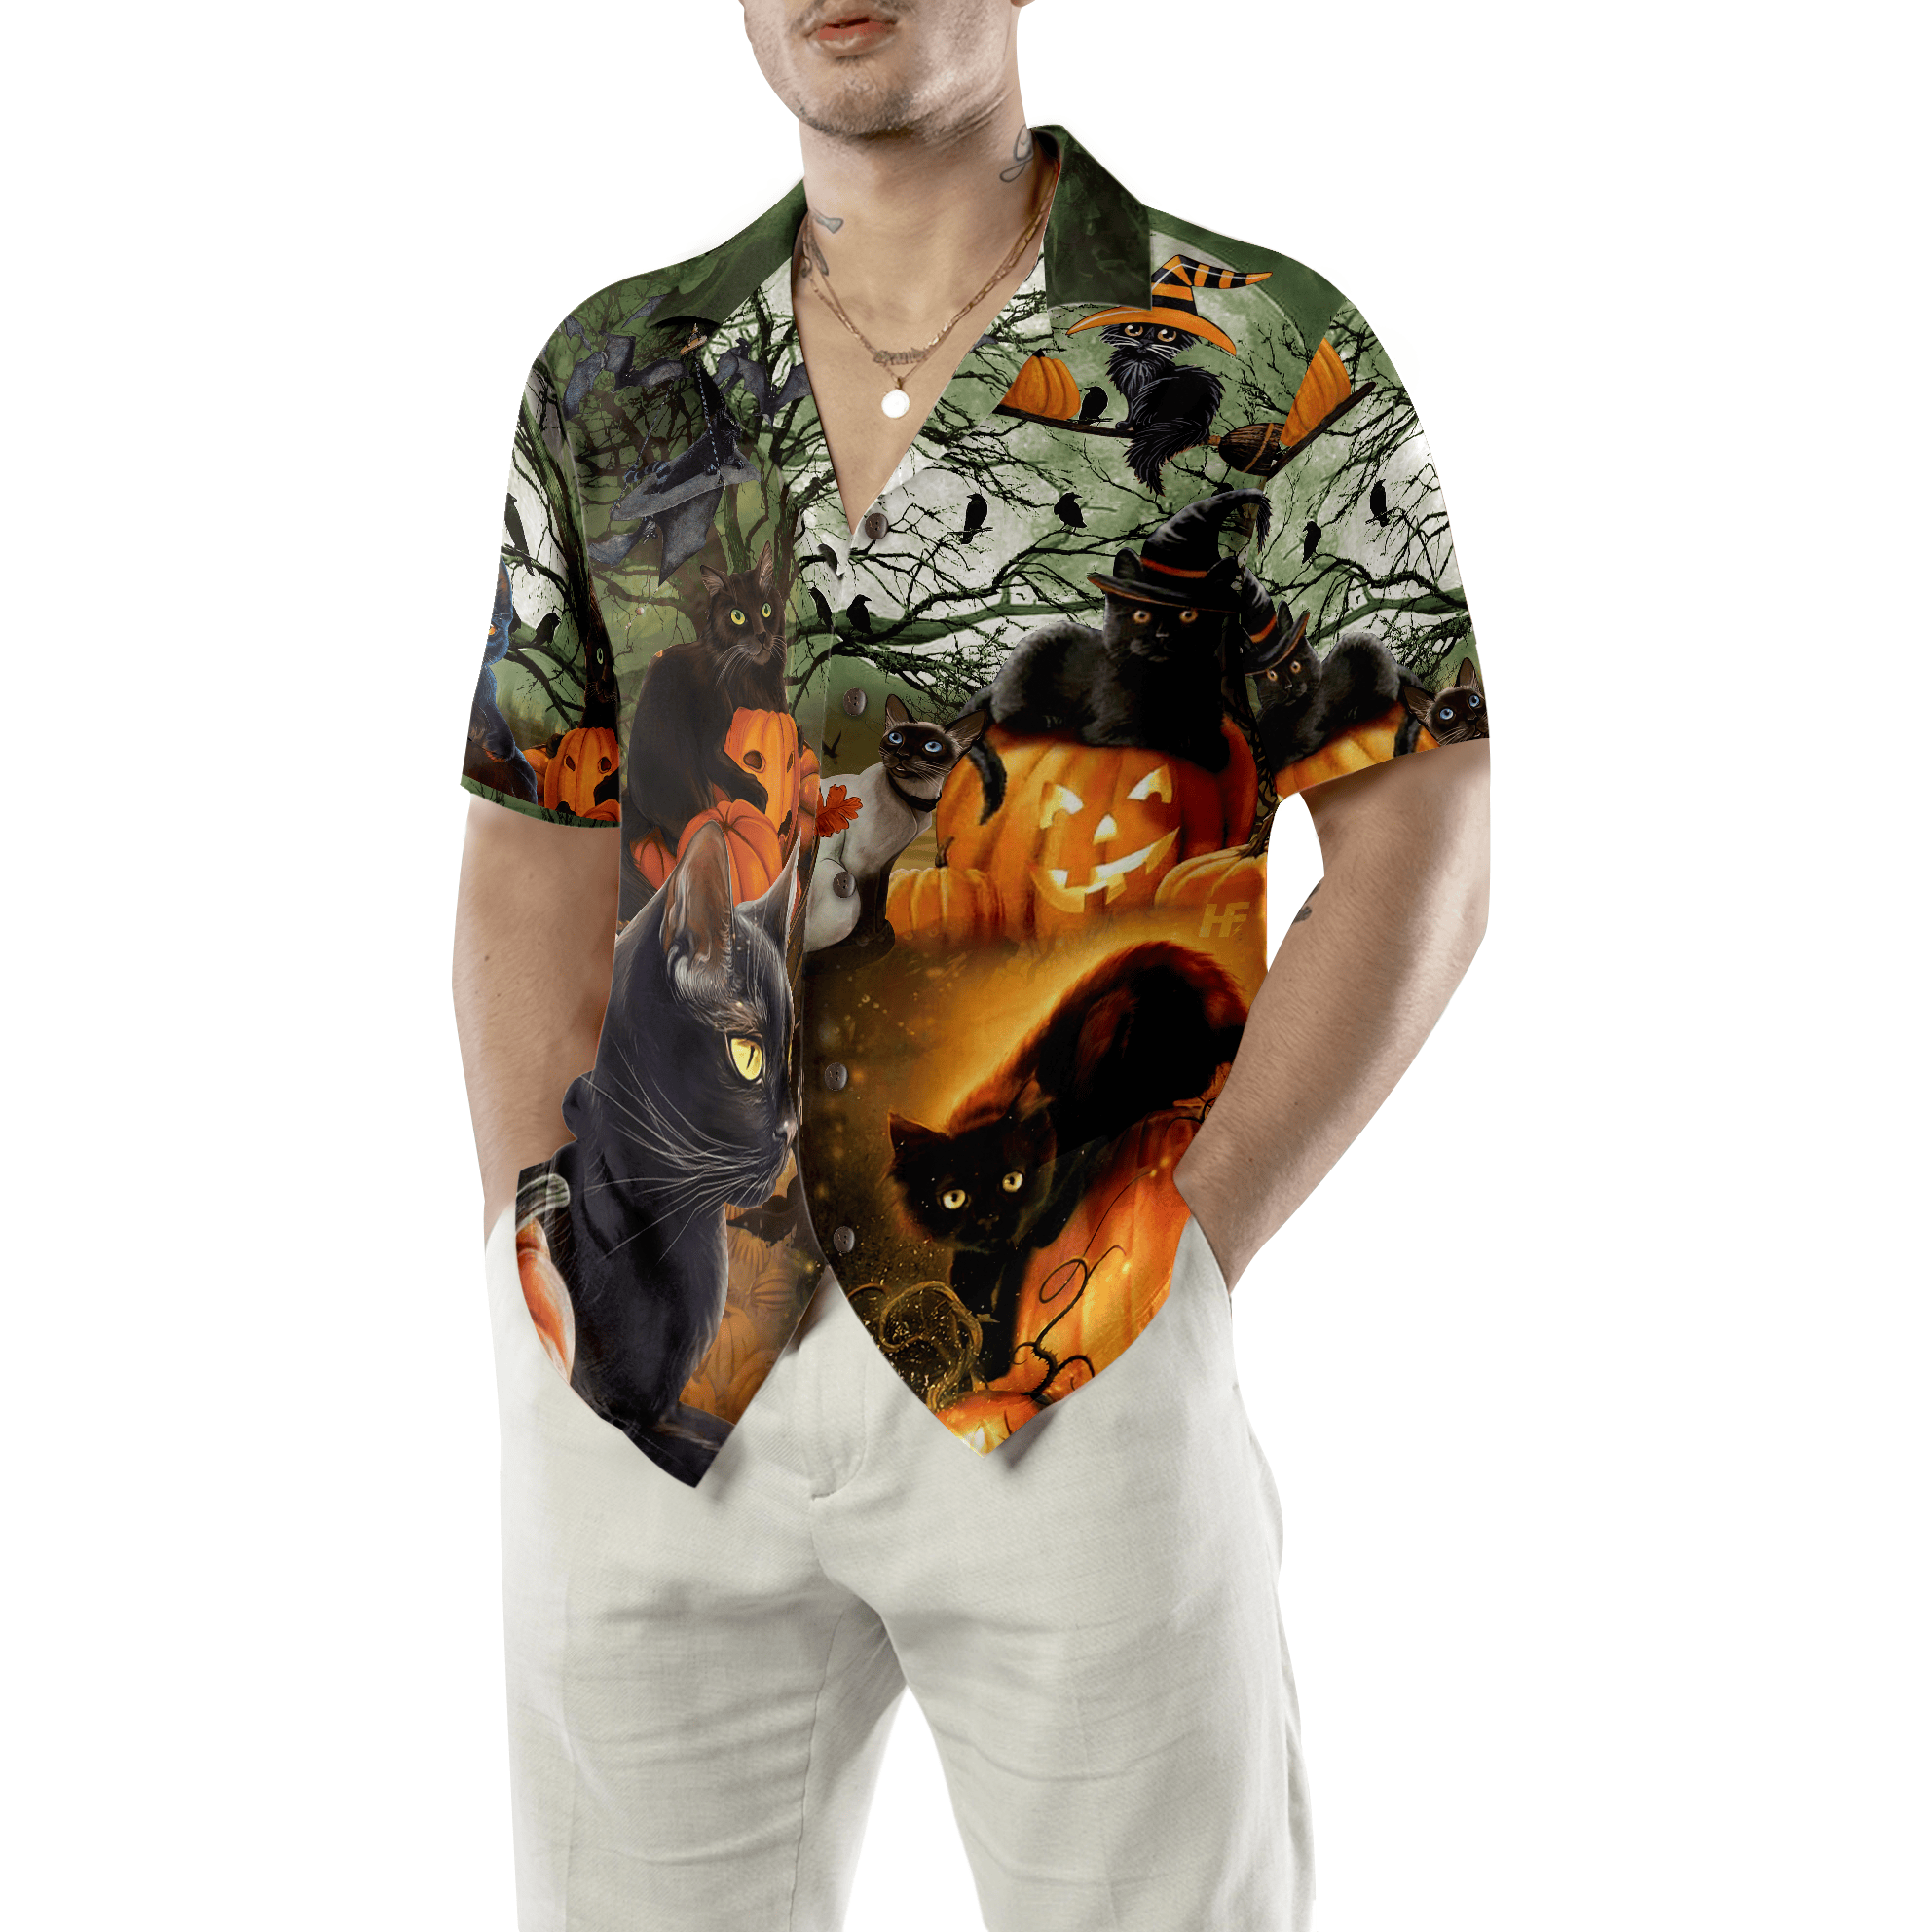 Black Cat & The Pumpkin Halloween Hawaiian Shirt, Halloween Shirt For Men And Women